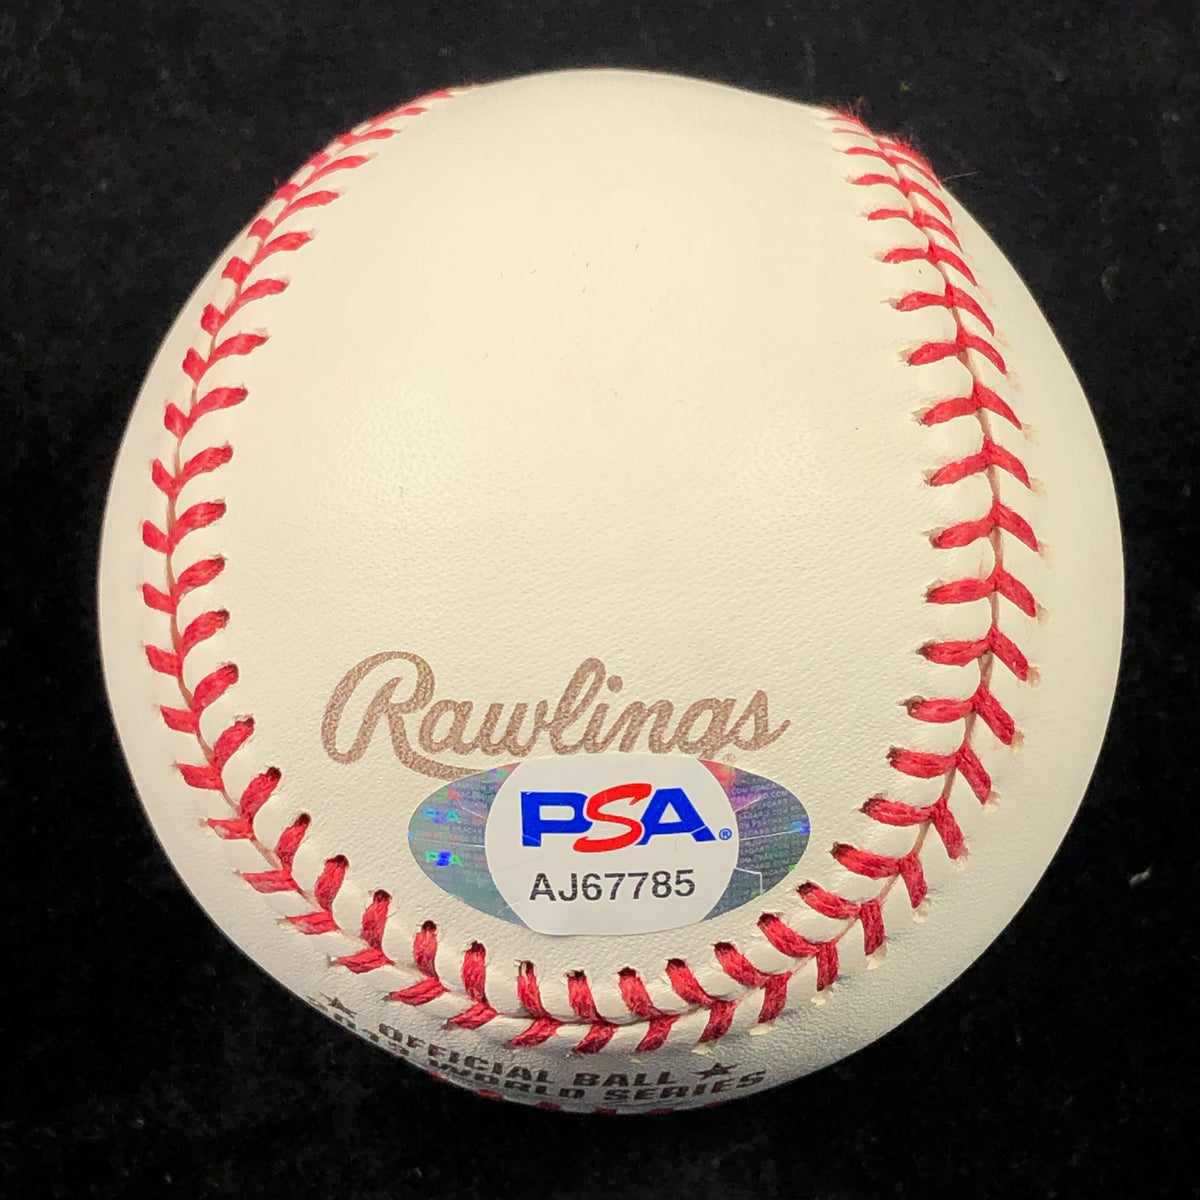 DUSTIN PEDROIA signed 2013 WS Baseball PSA/DNA Boston Red Sox autograp –  Golden State Memorabilia